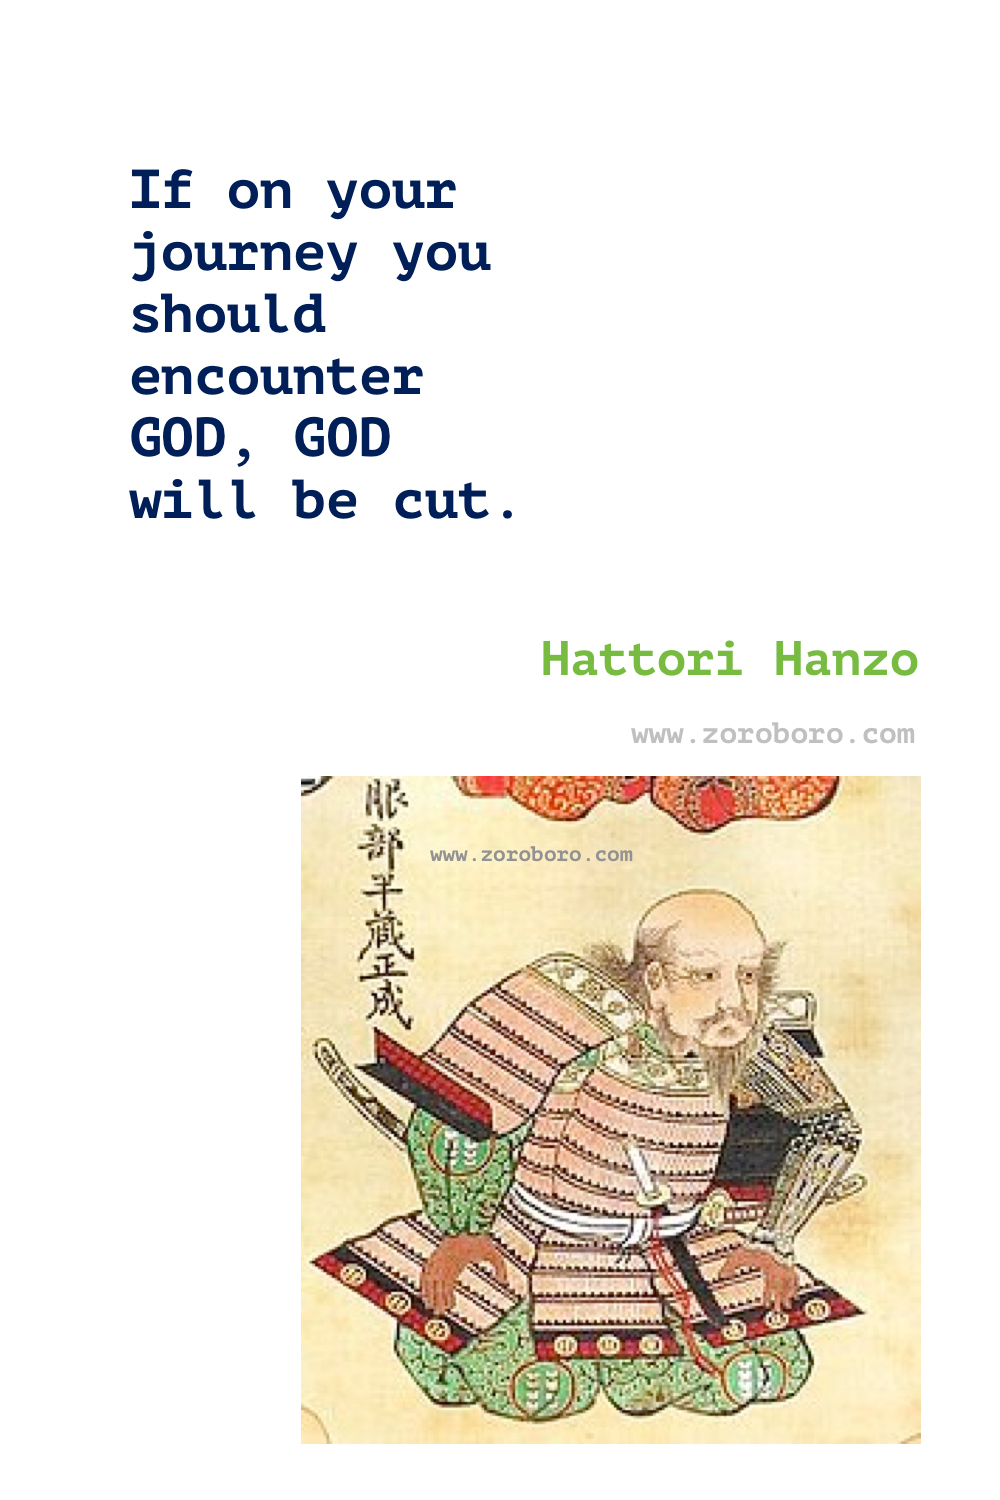 Hattori Hanzo Quotes, Hattori Hanzo Teachings, Hattori Hanzo Warrior Quotes, Hattori Hanzo Samurai Quotes, Hattori Hanzo .